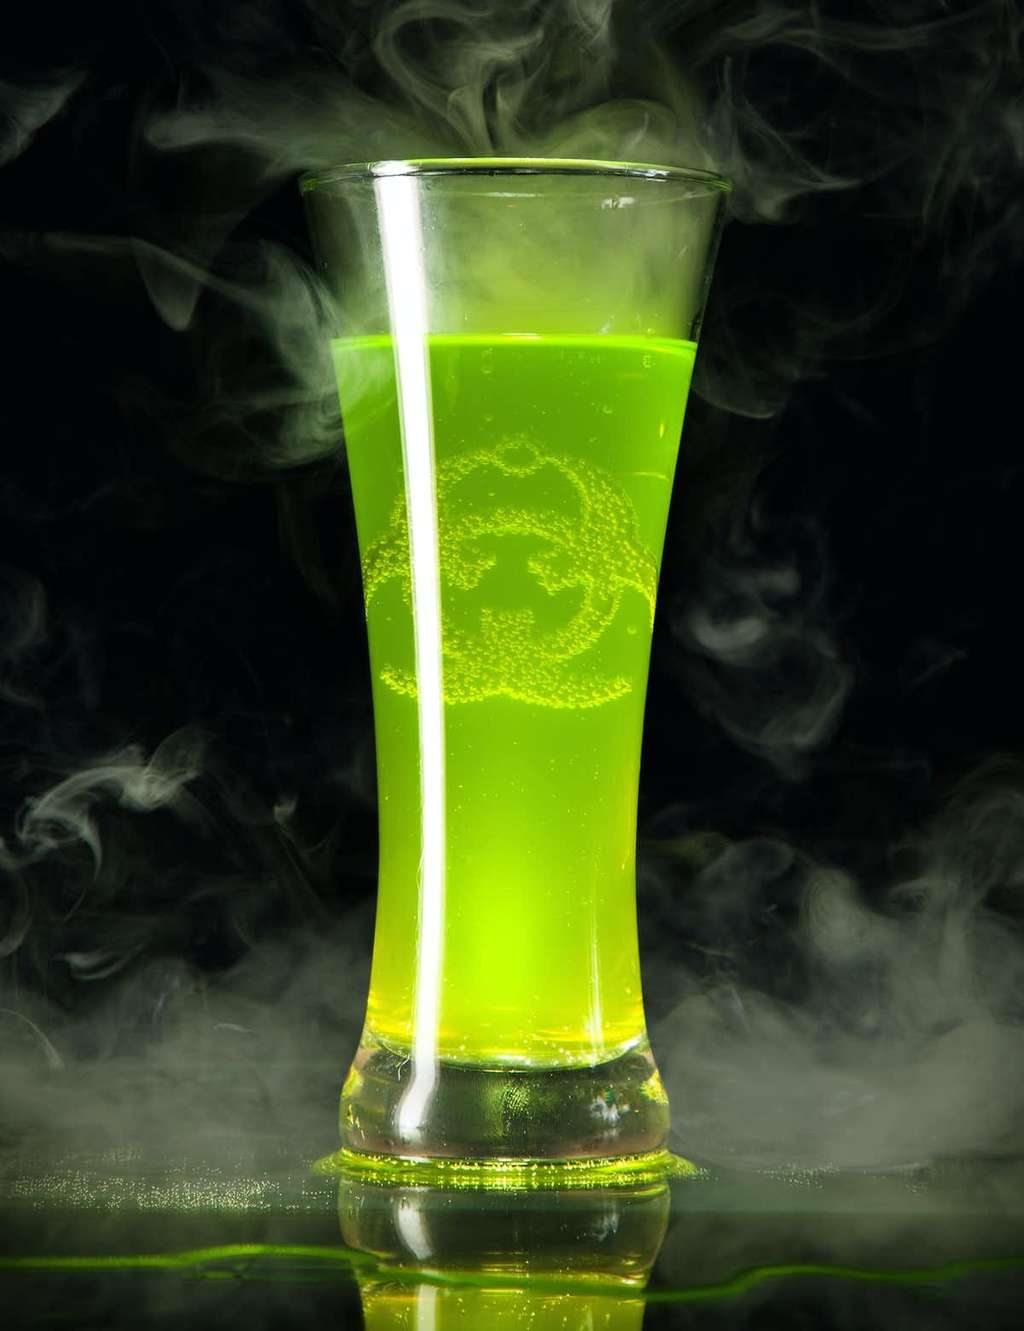 Les boissons littéralement radioactives ont disparus du marché. © Drink, Shutterstock